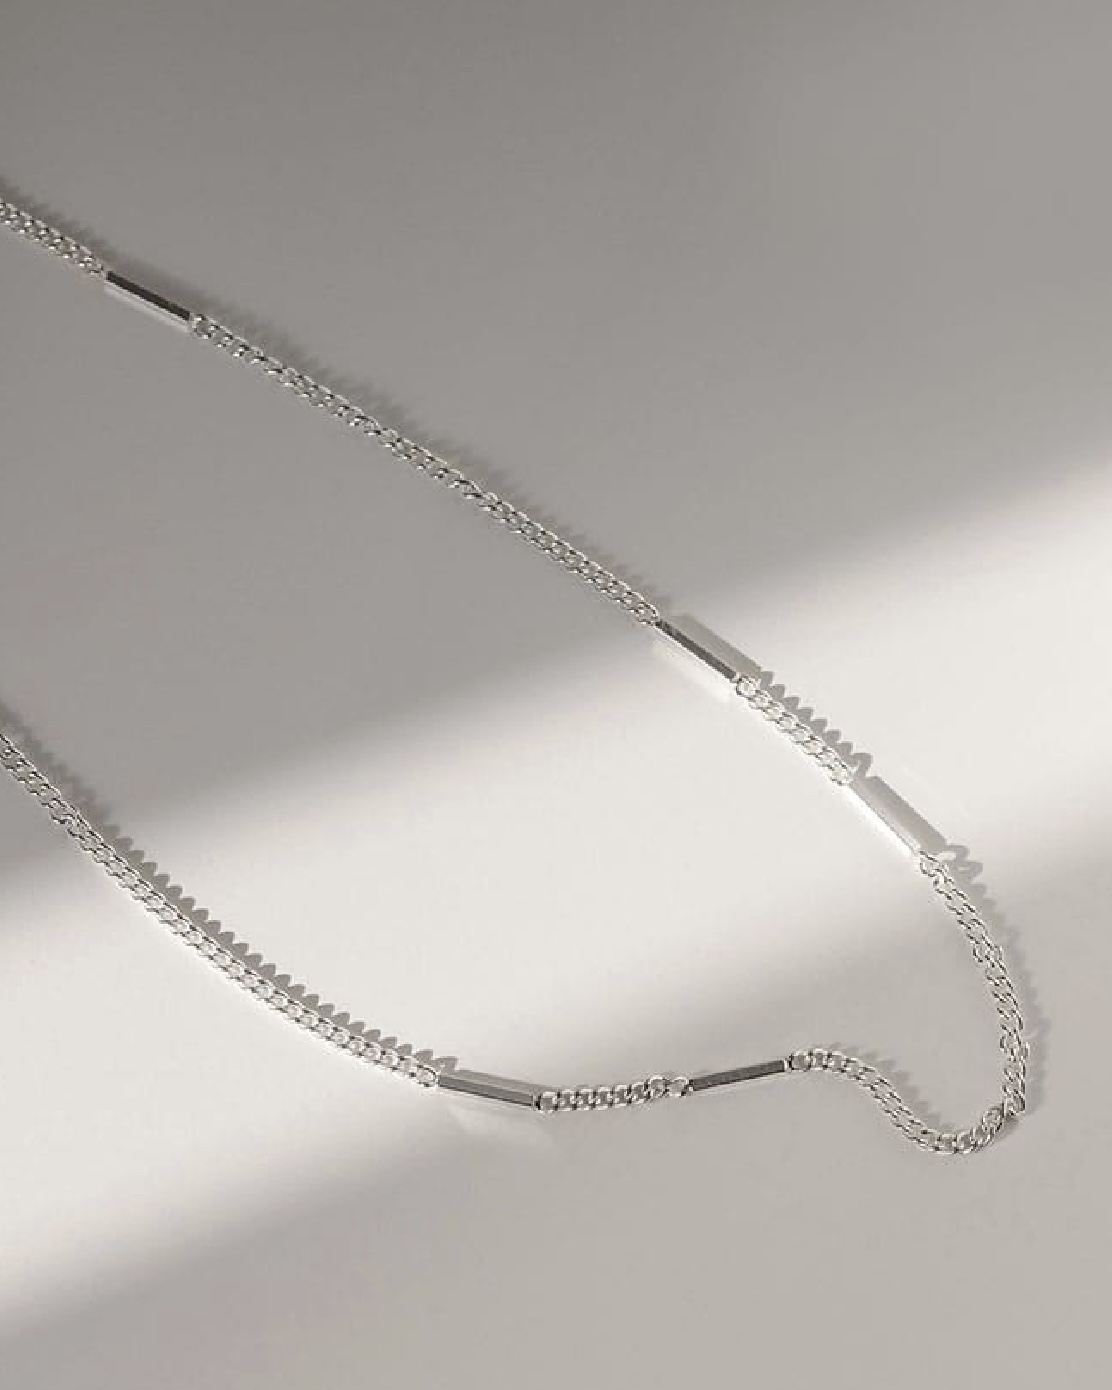 Martini Silver Necklace